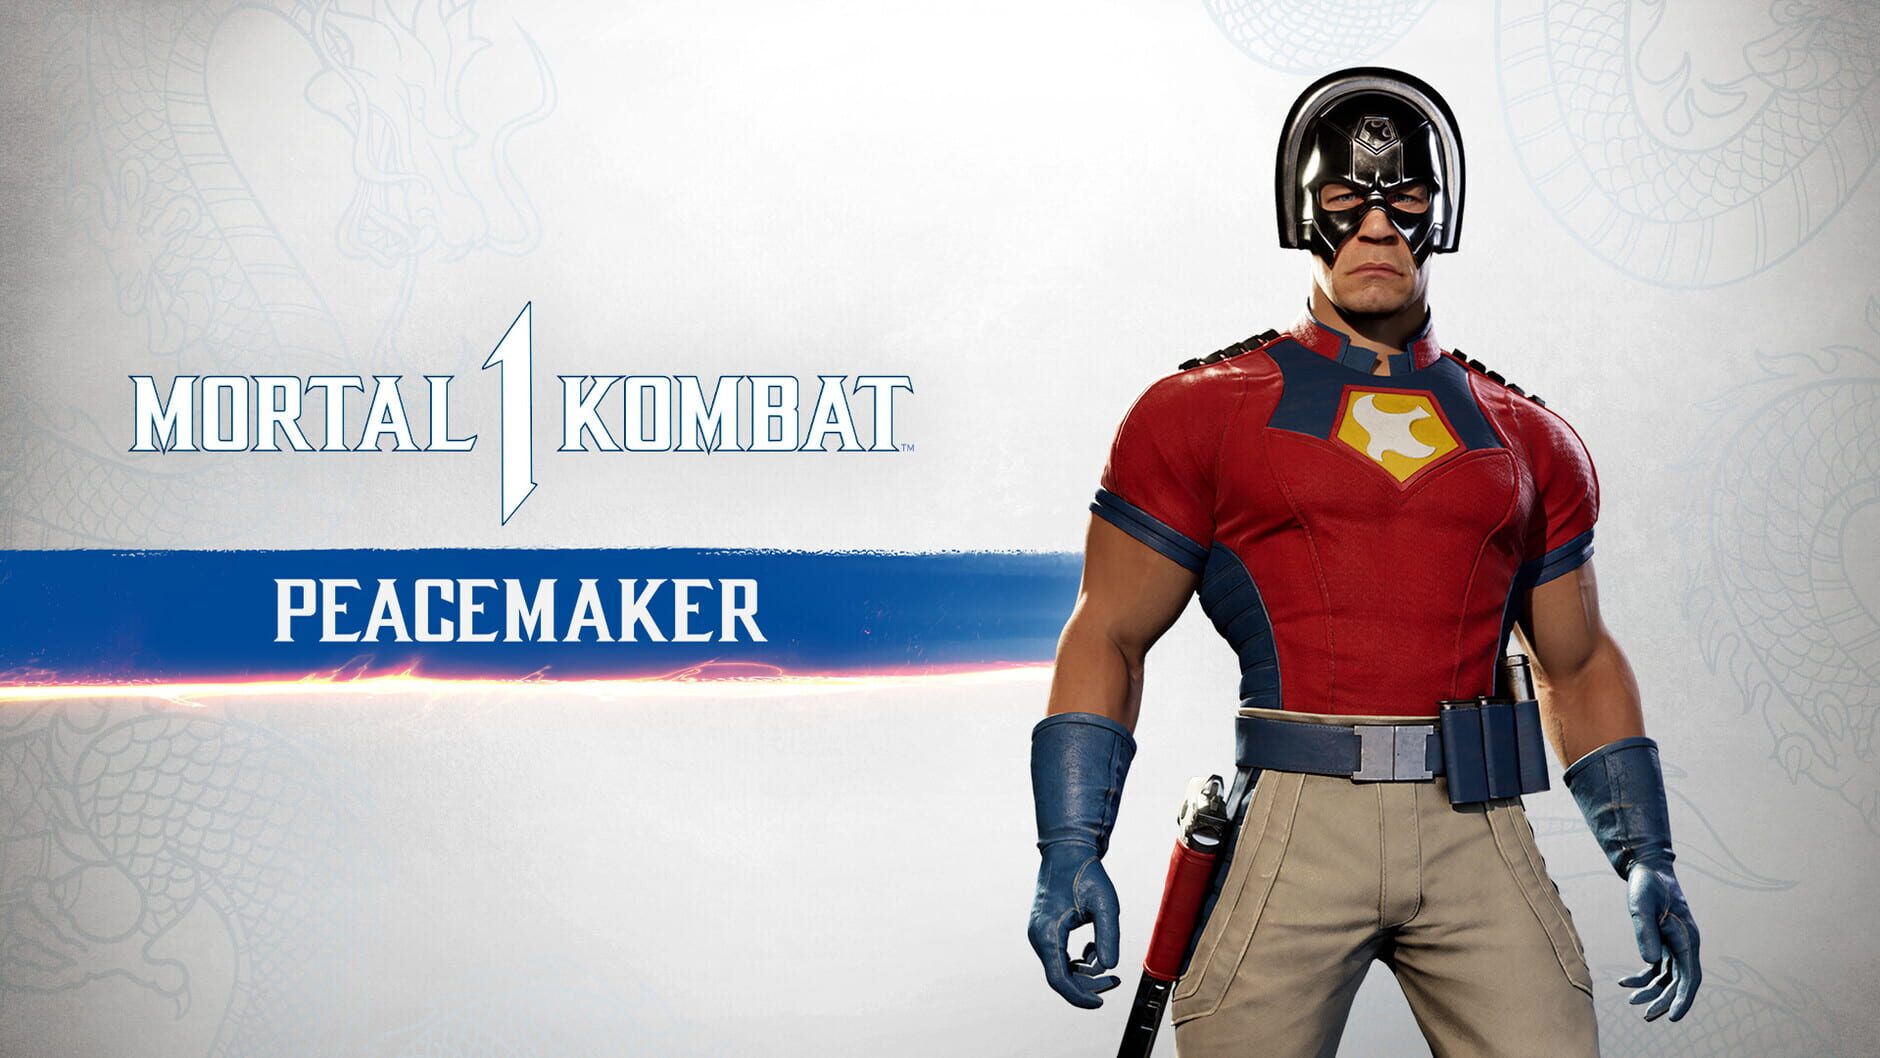 Screenshot for Mortal Kombat 1: Peacemaker